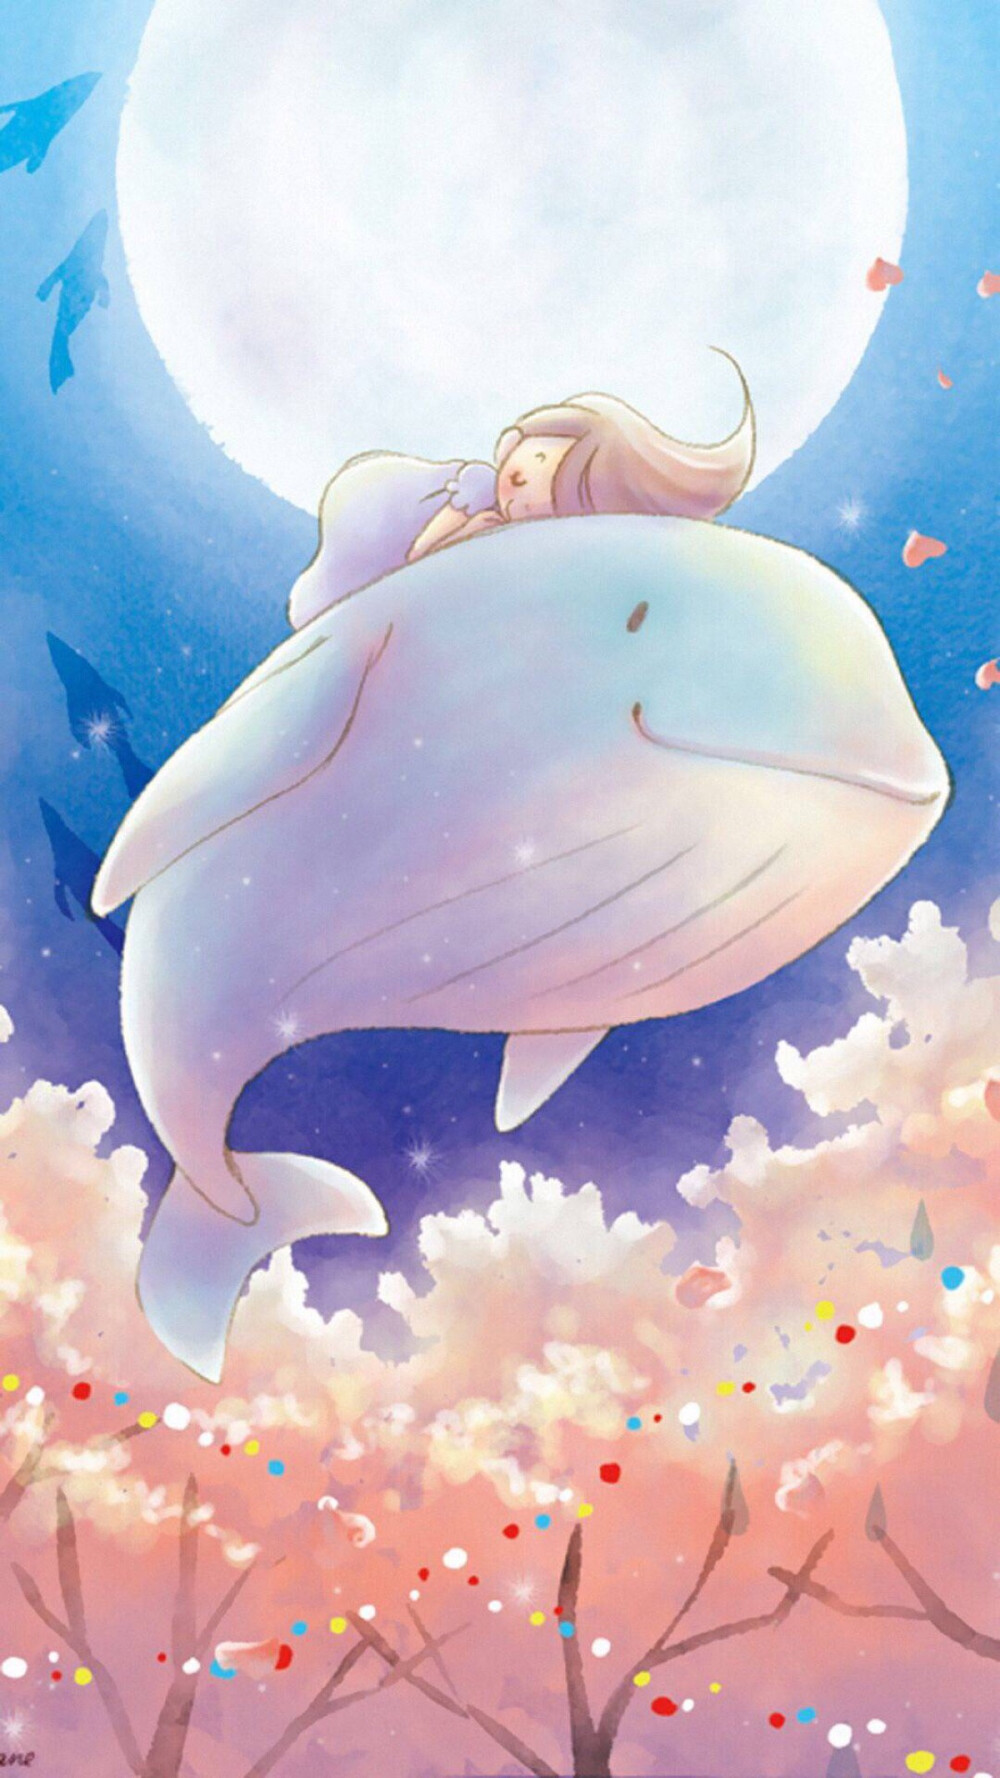 『沫沫』动漫原创 插画手绘 二次元 唯美 萌 可爱 鲸鱼 壁纸